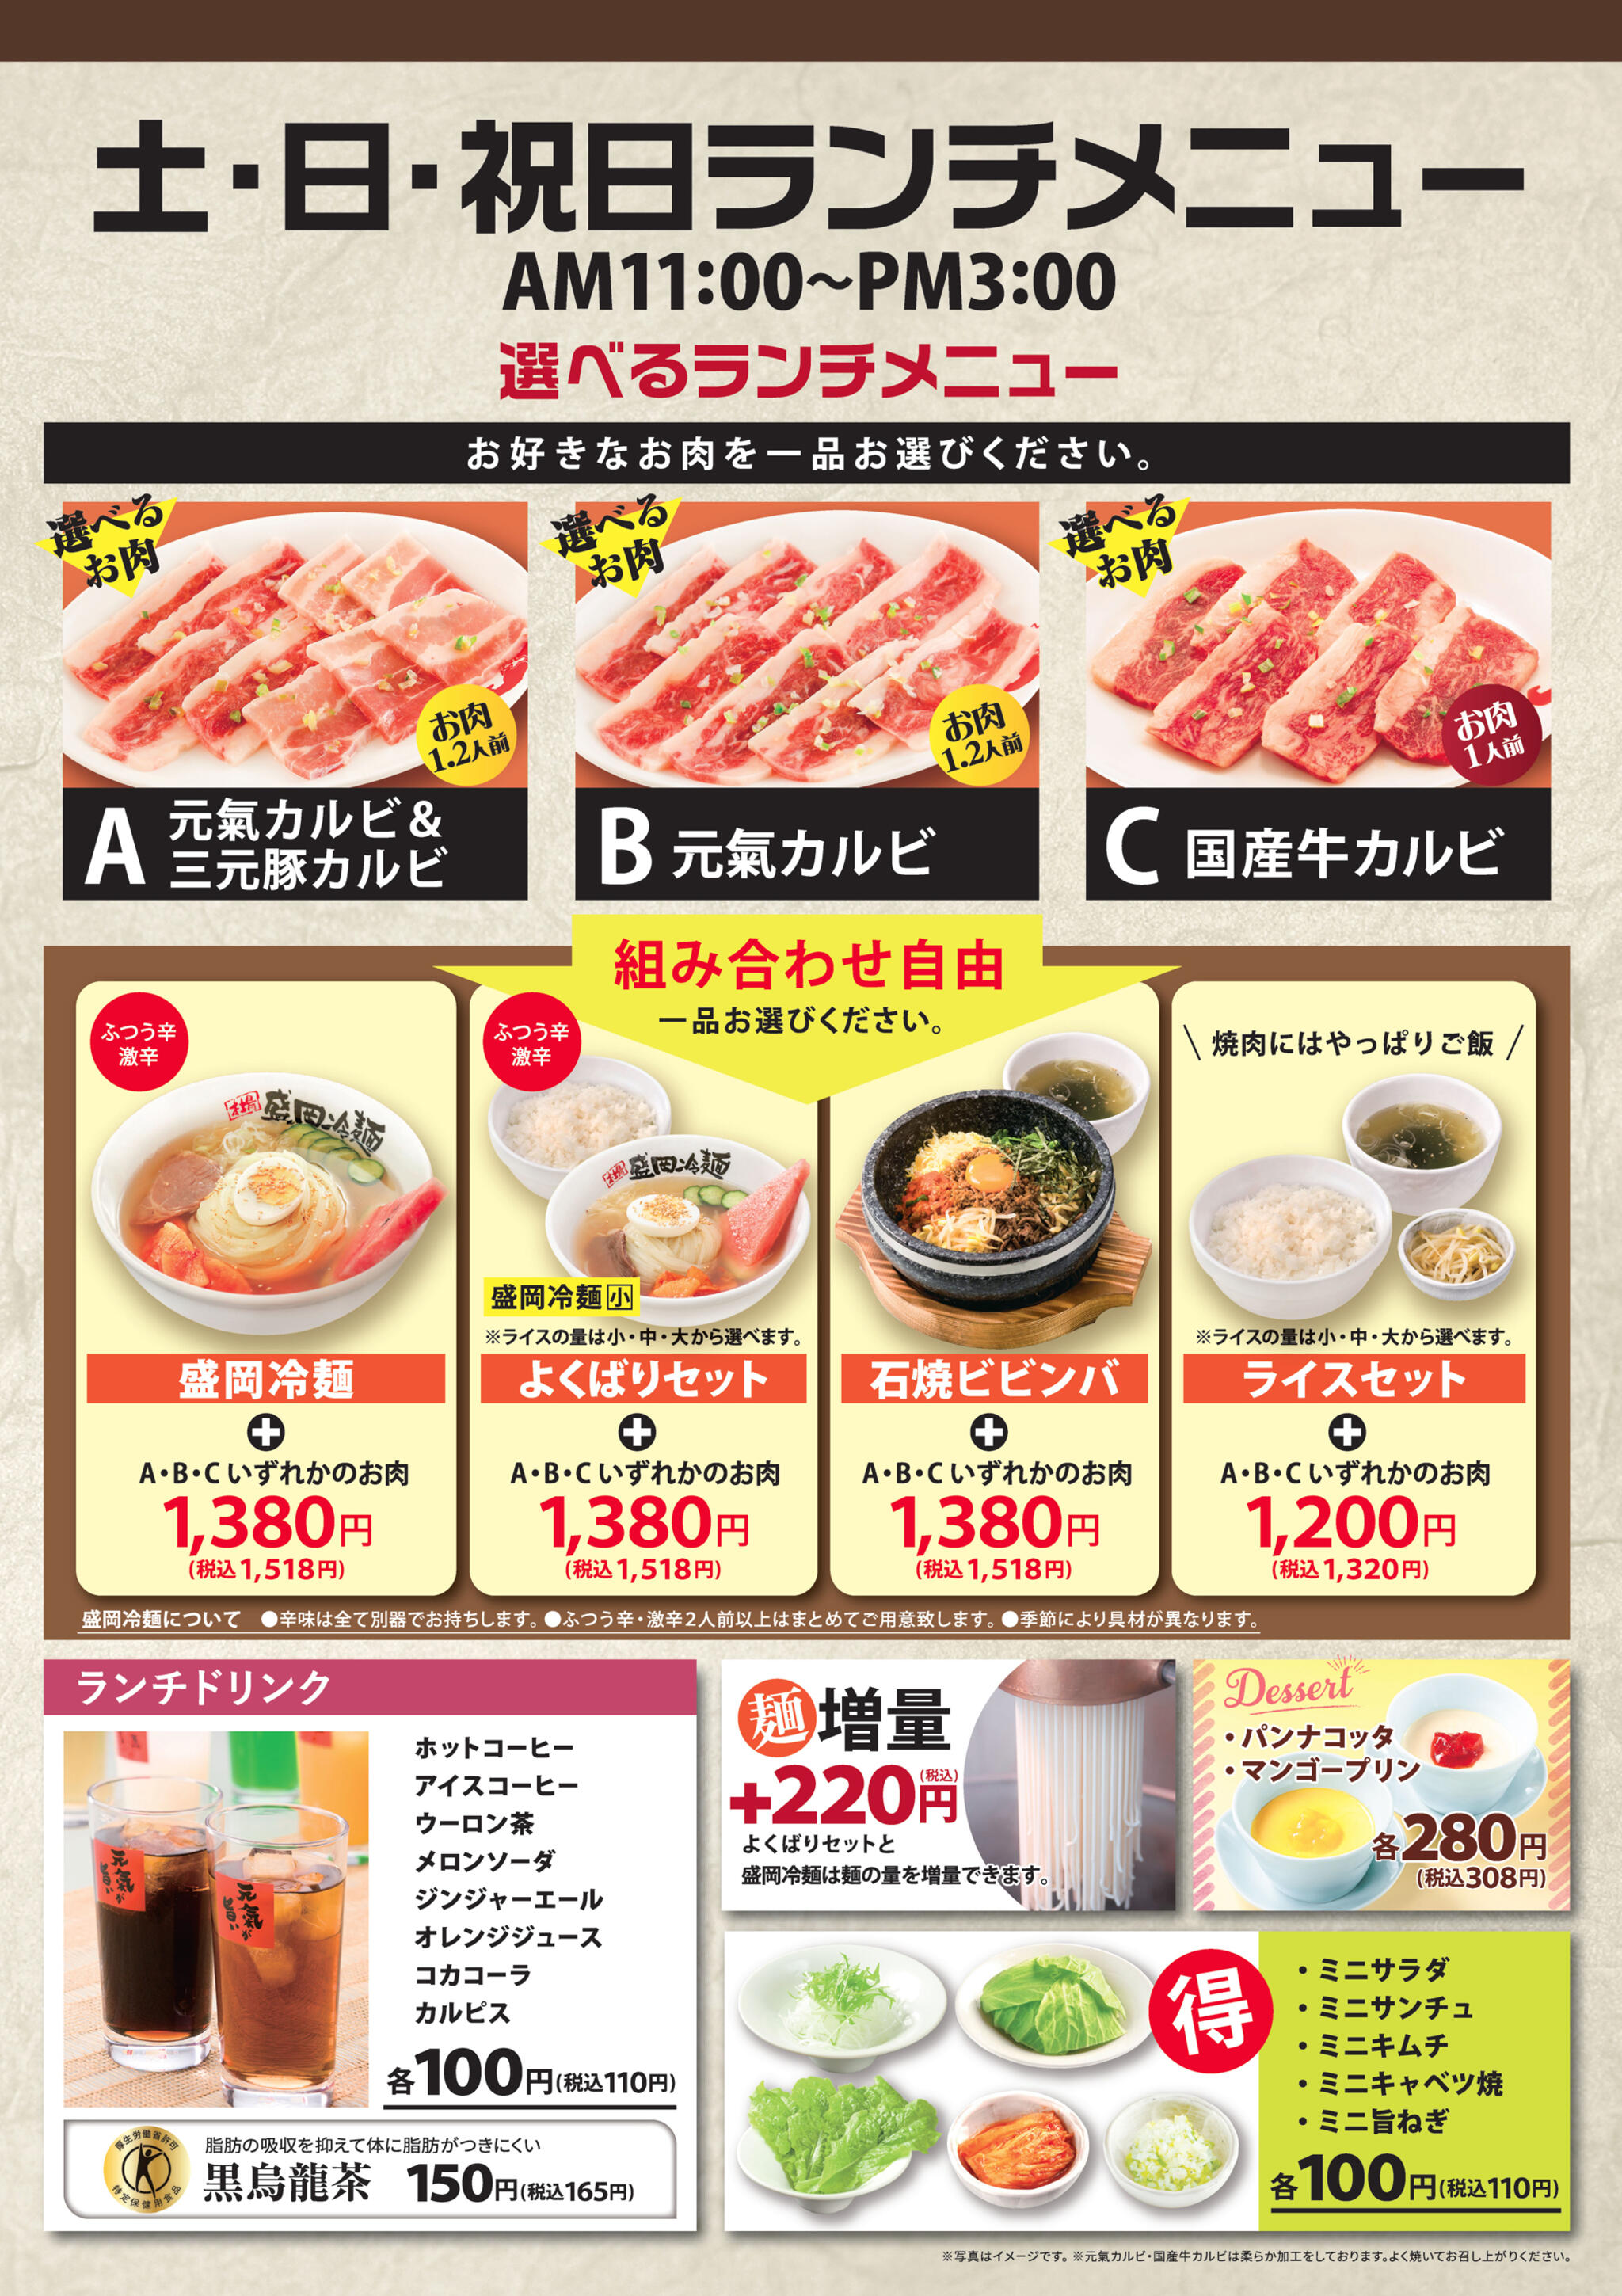 焼肉冷麺やまなか家 西多賀店からのお知らせ(【GW期間ランチメニューについて】)に関する写真